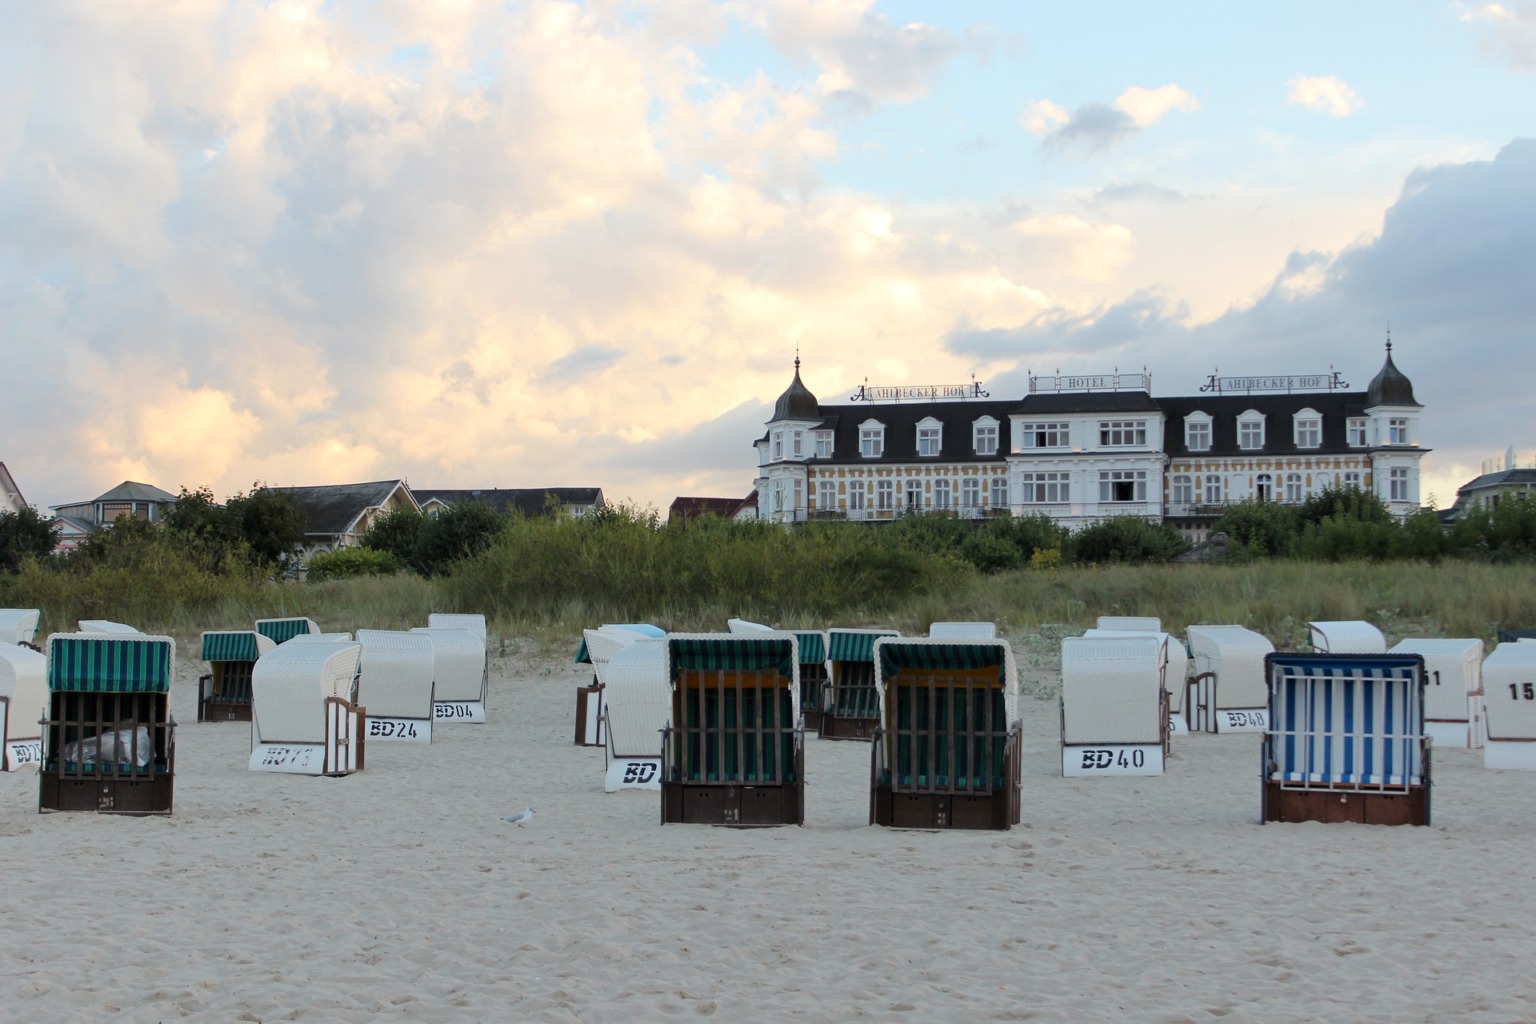 Urlaub in Ostdeutschland geht nicht ohne die Insel Usedom